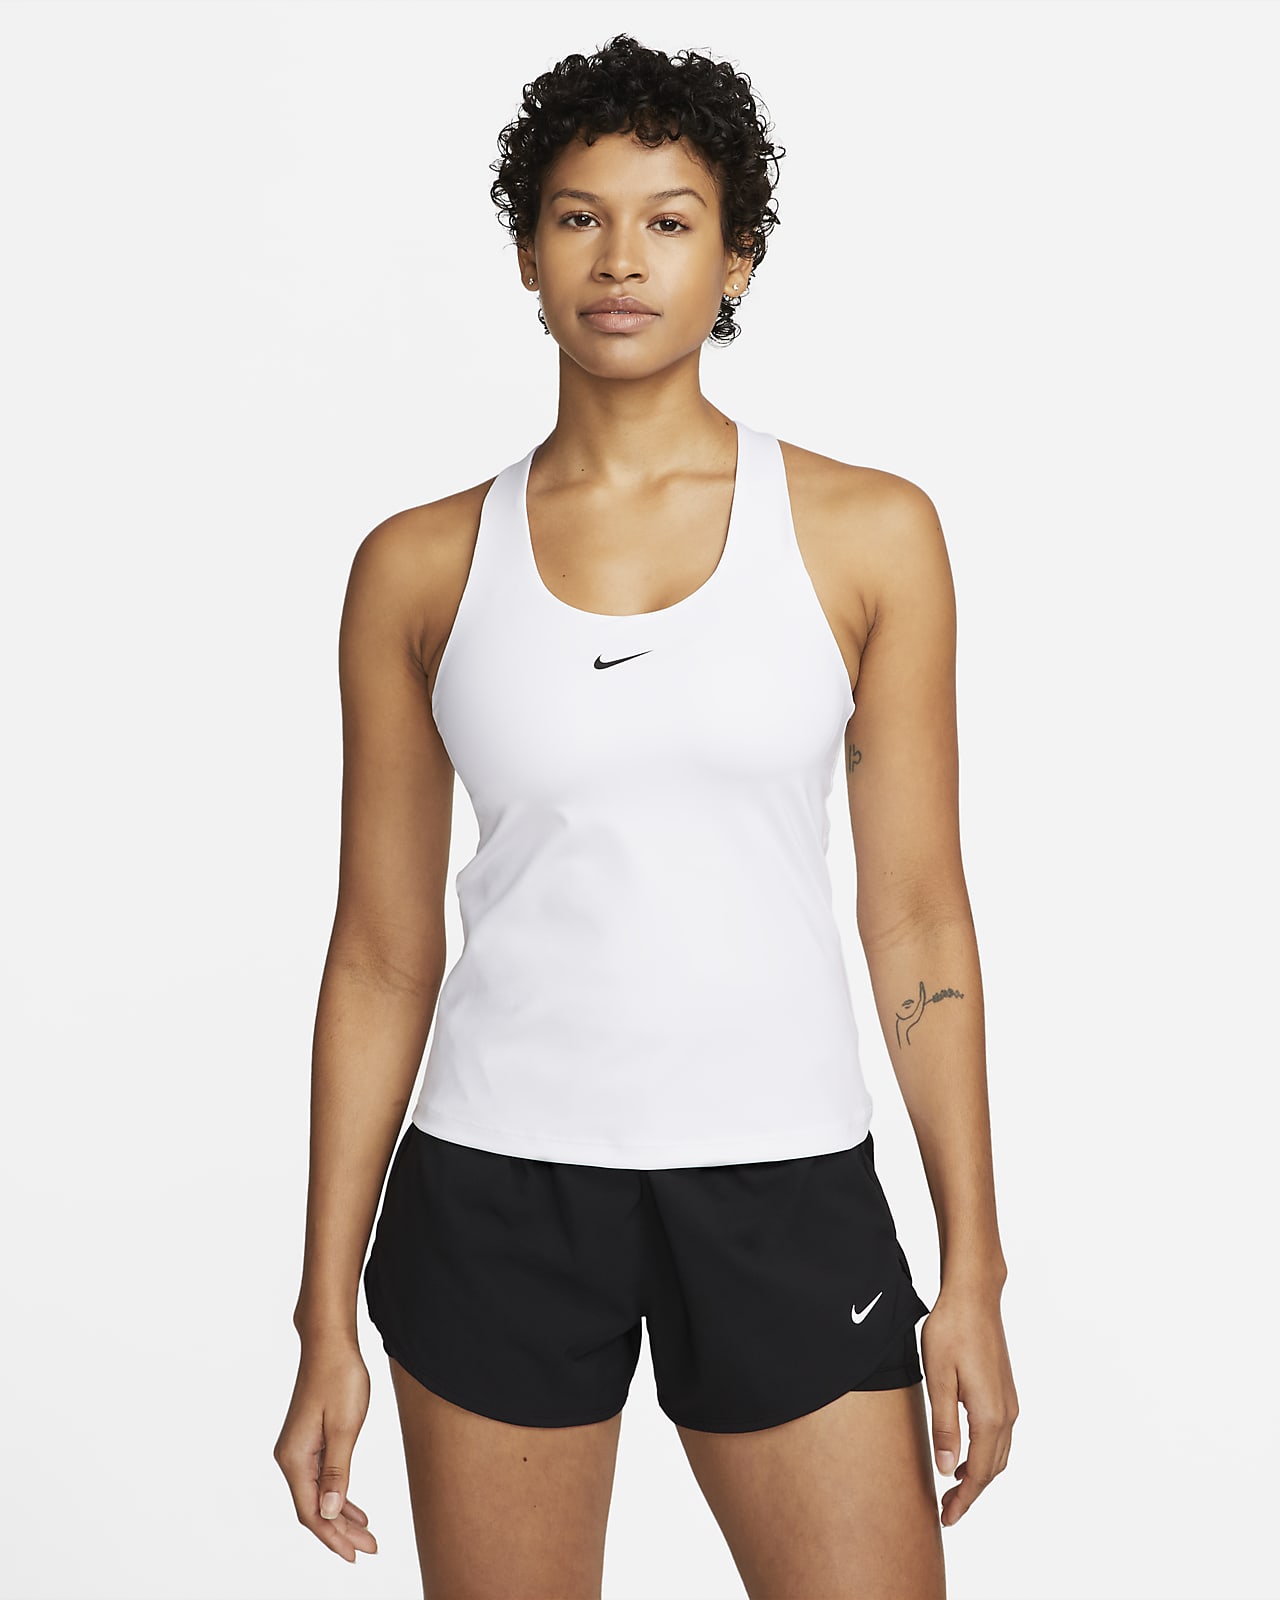 Canotta con bra imbottito a sostegno medio Nike Swoosh – Donna